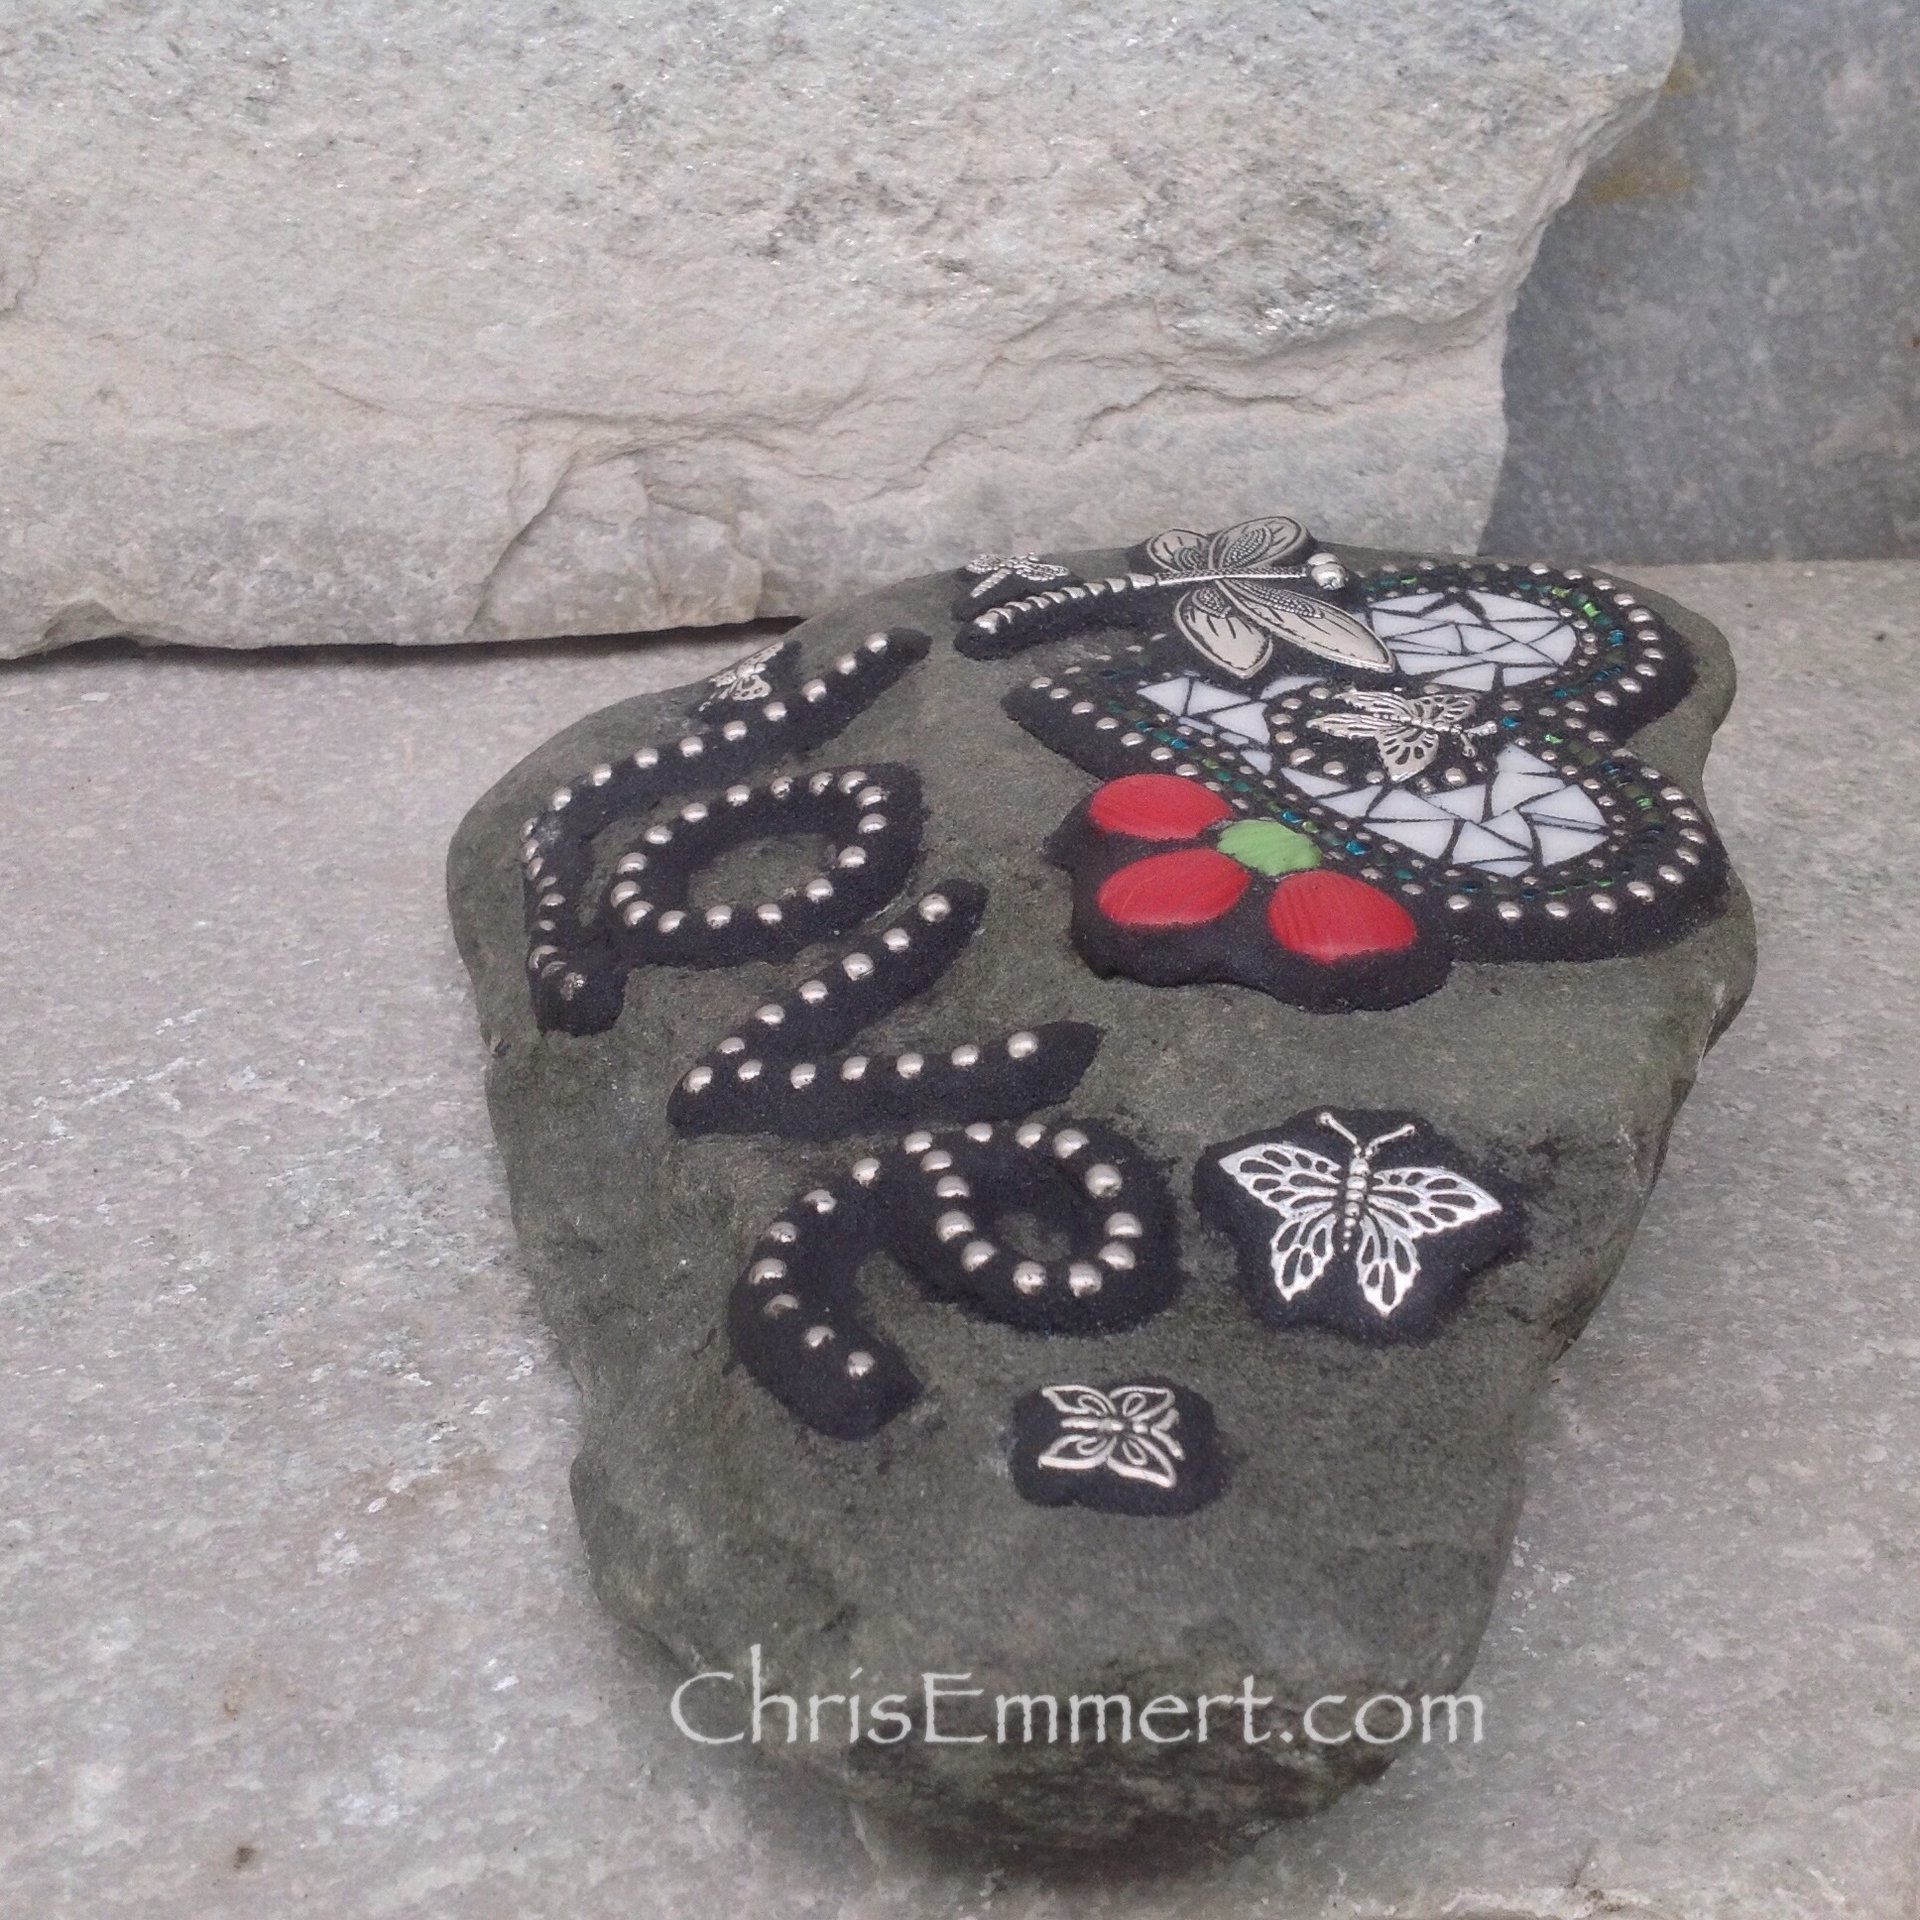 Special Price #2 Love Rock, Heart, Dragonfly, Garden Stone, Mosaic, Garden Decor